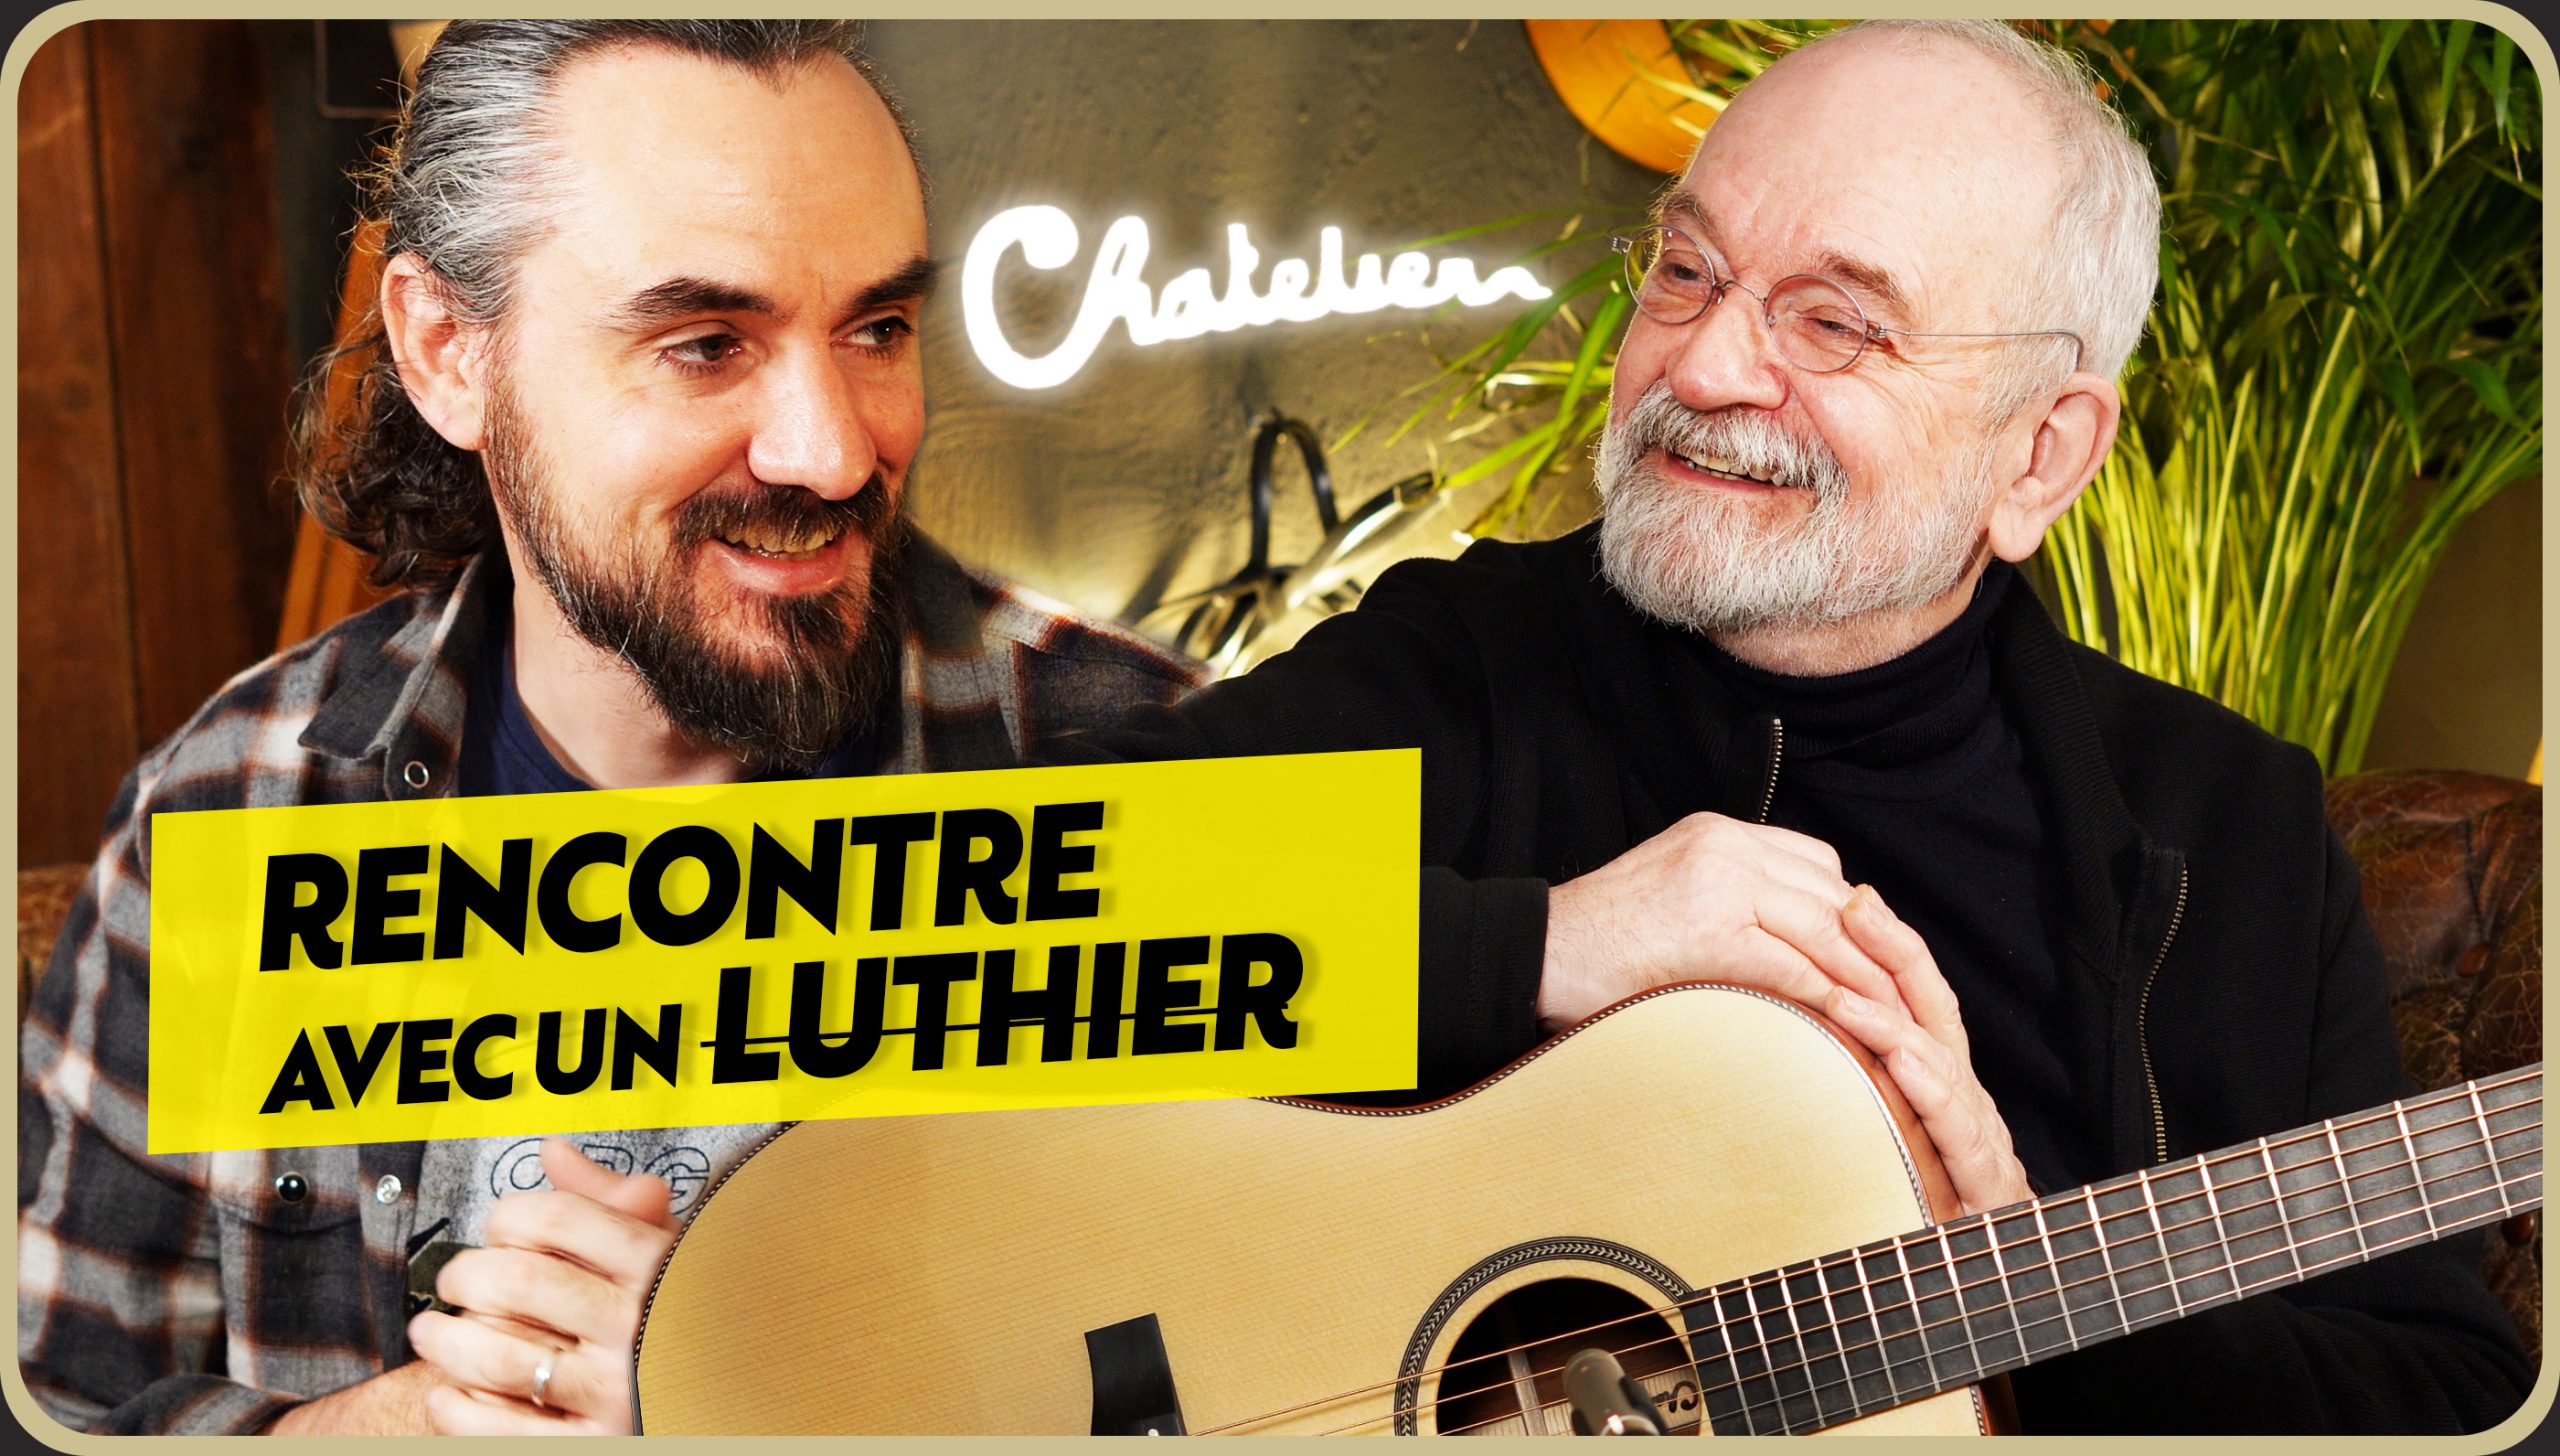 Rencontre avec les Frères Chatelier, fabricants de guitares haut de gamme